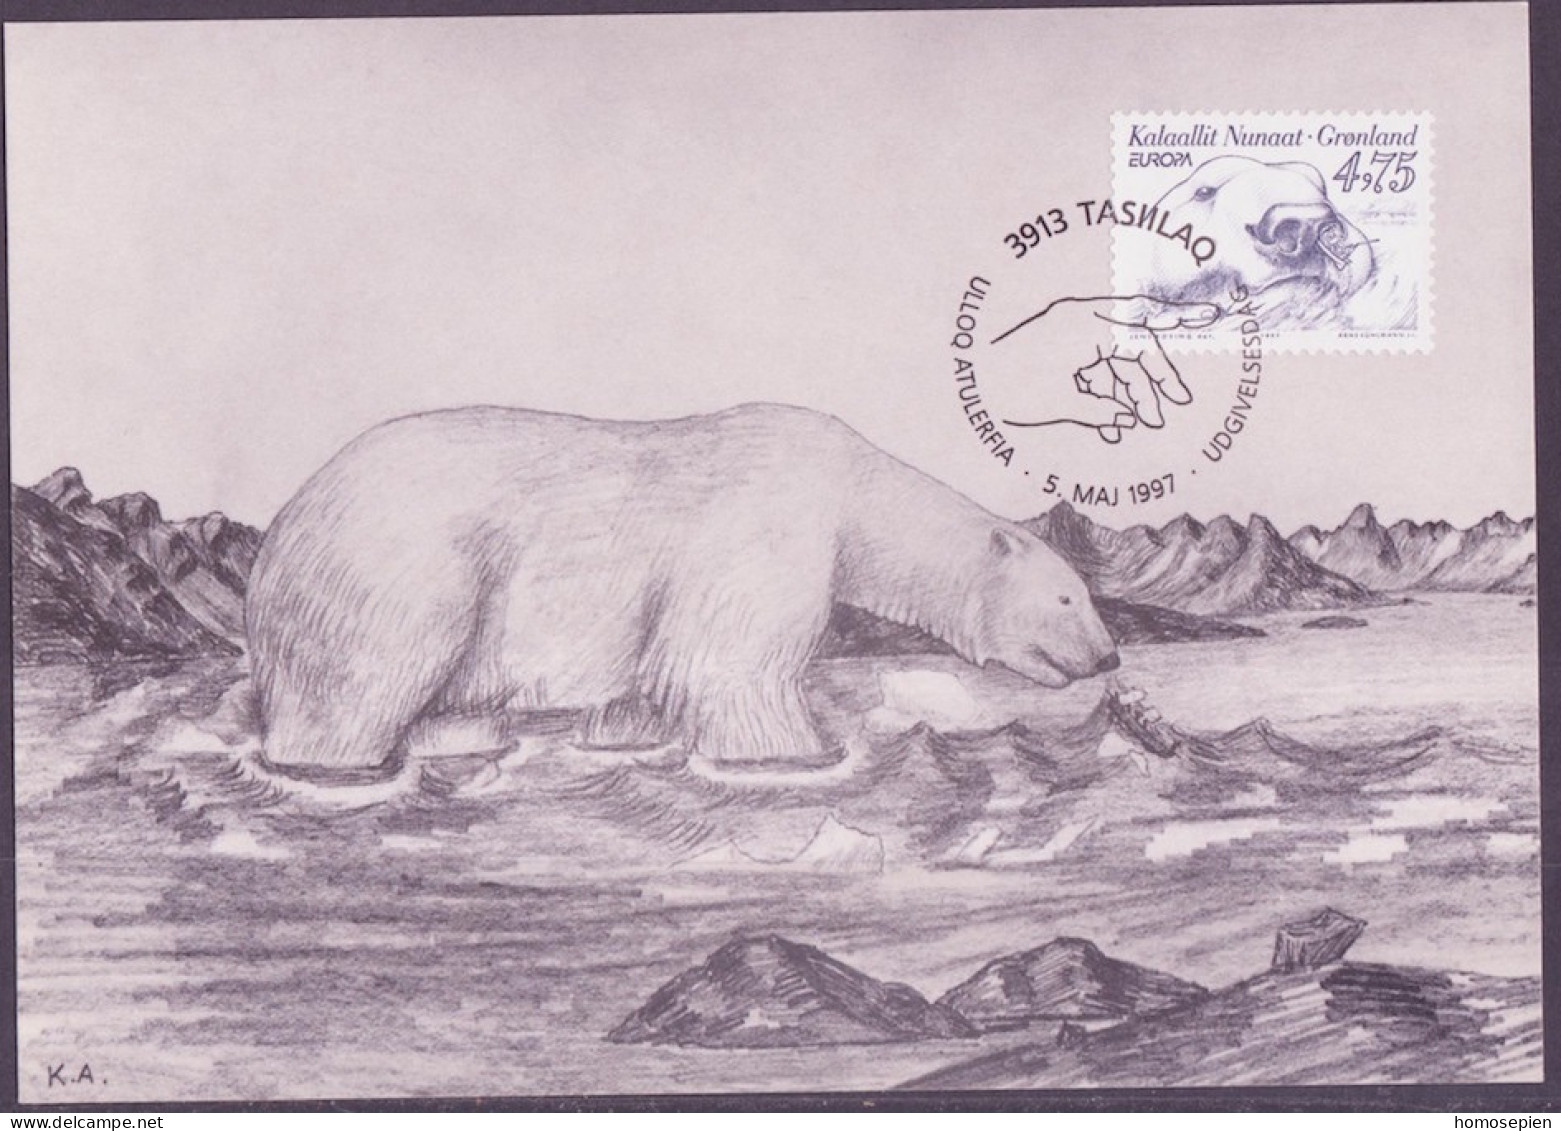 Groenland - Grönland - Greenland - Danemark CM 1997 Y&T N°288 - Michel N°MK309 - 4,75k EUROPA - Maximum Cards